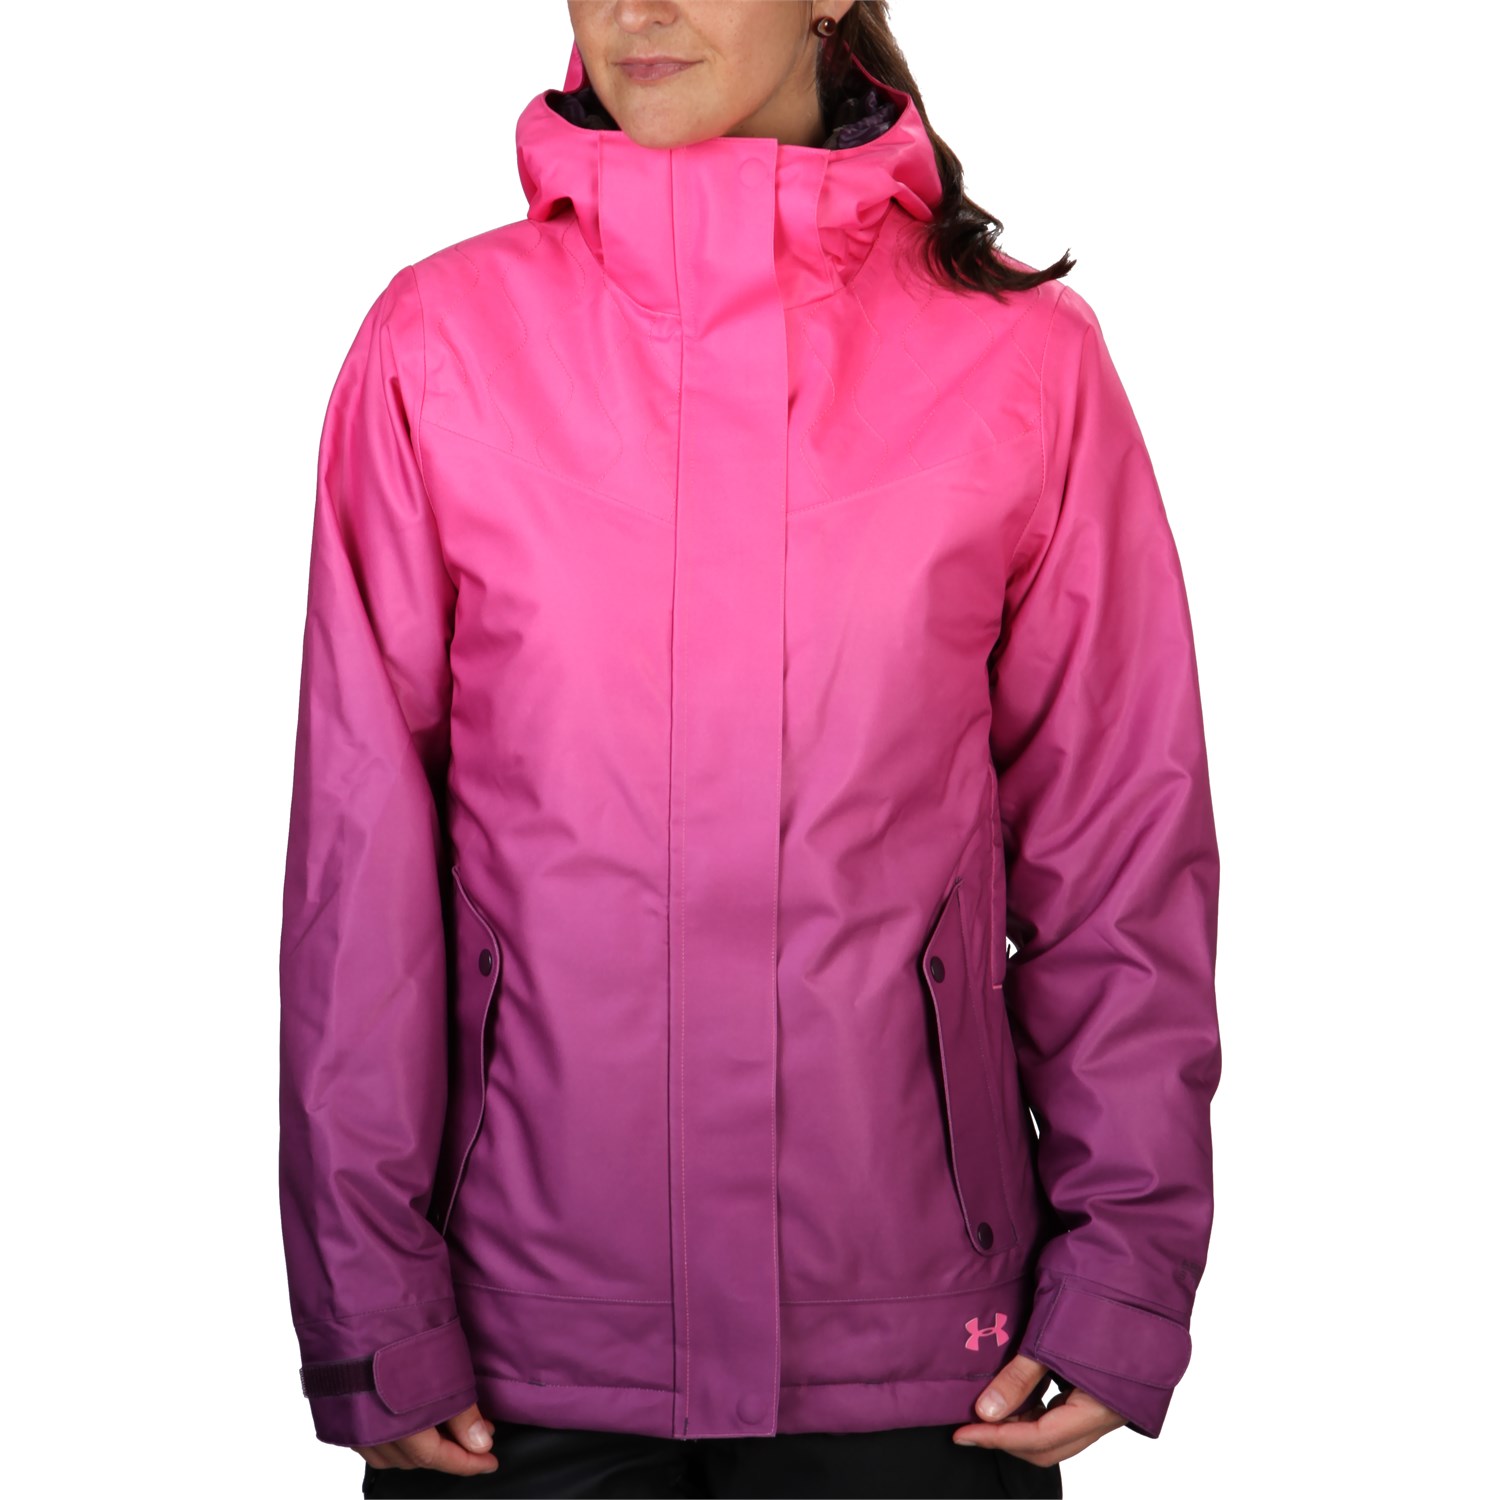 coldgear infrared jacket